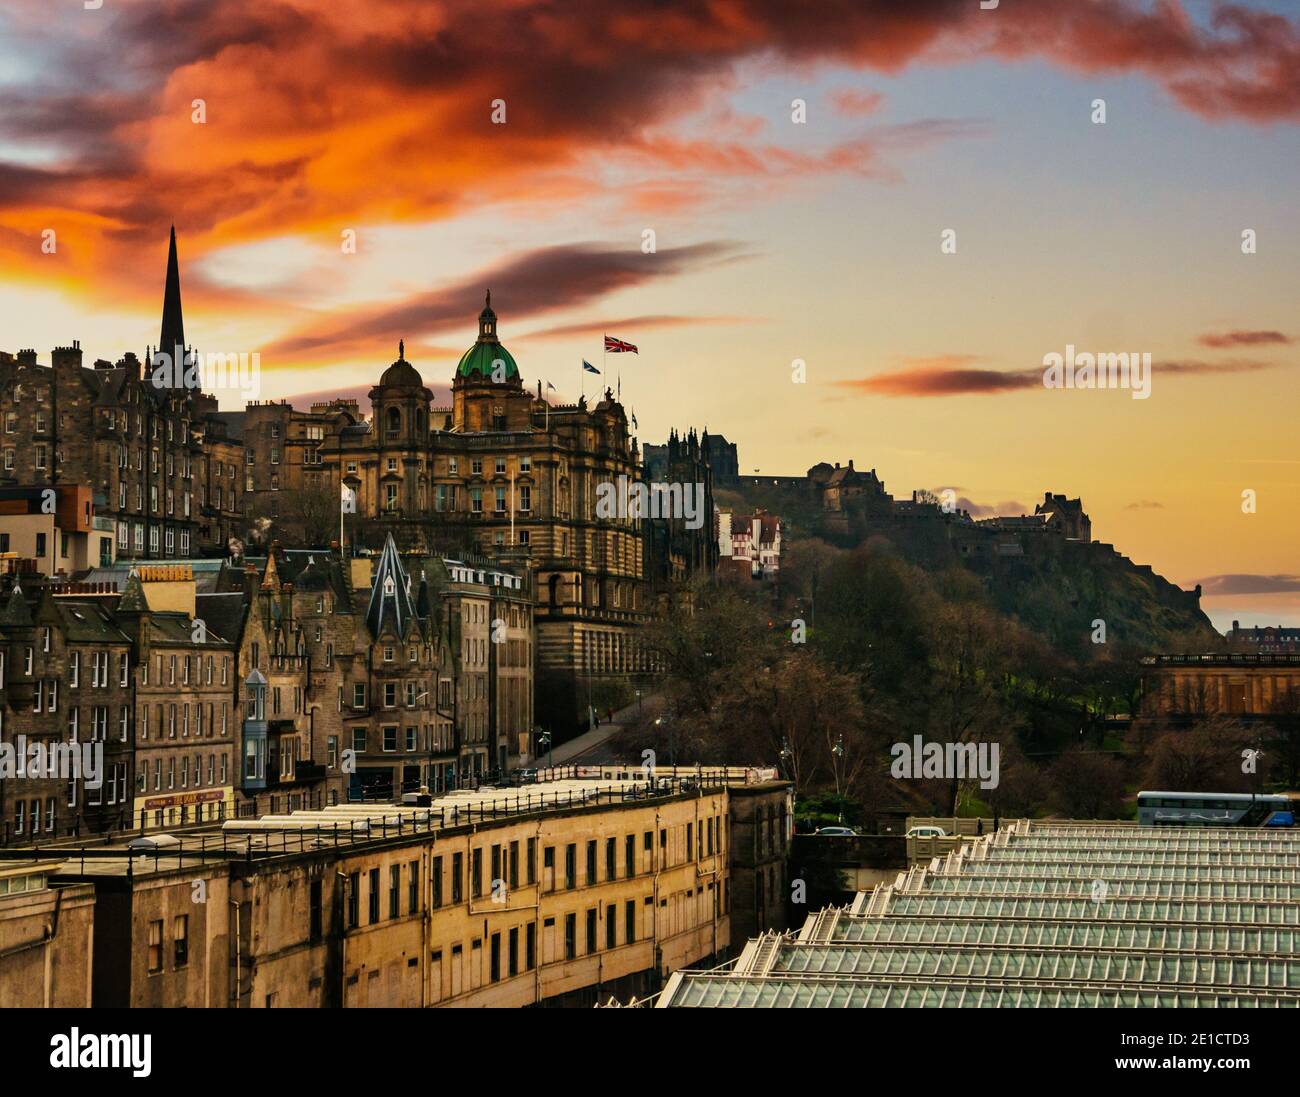 Blick über das Glasdach des Waverley Bahnhofs auf den Mound & Edinburgh Castle bei Sonnenuntergang, Edinburgh, Schottland, Großbritannien Stockfoto